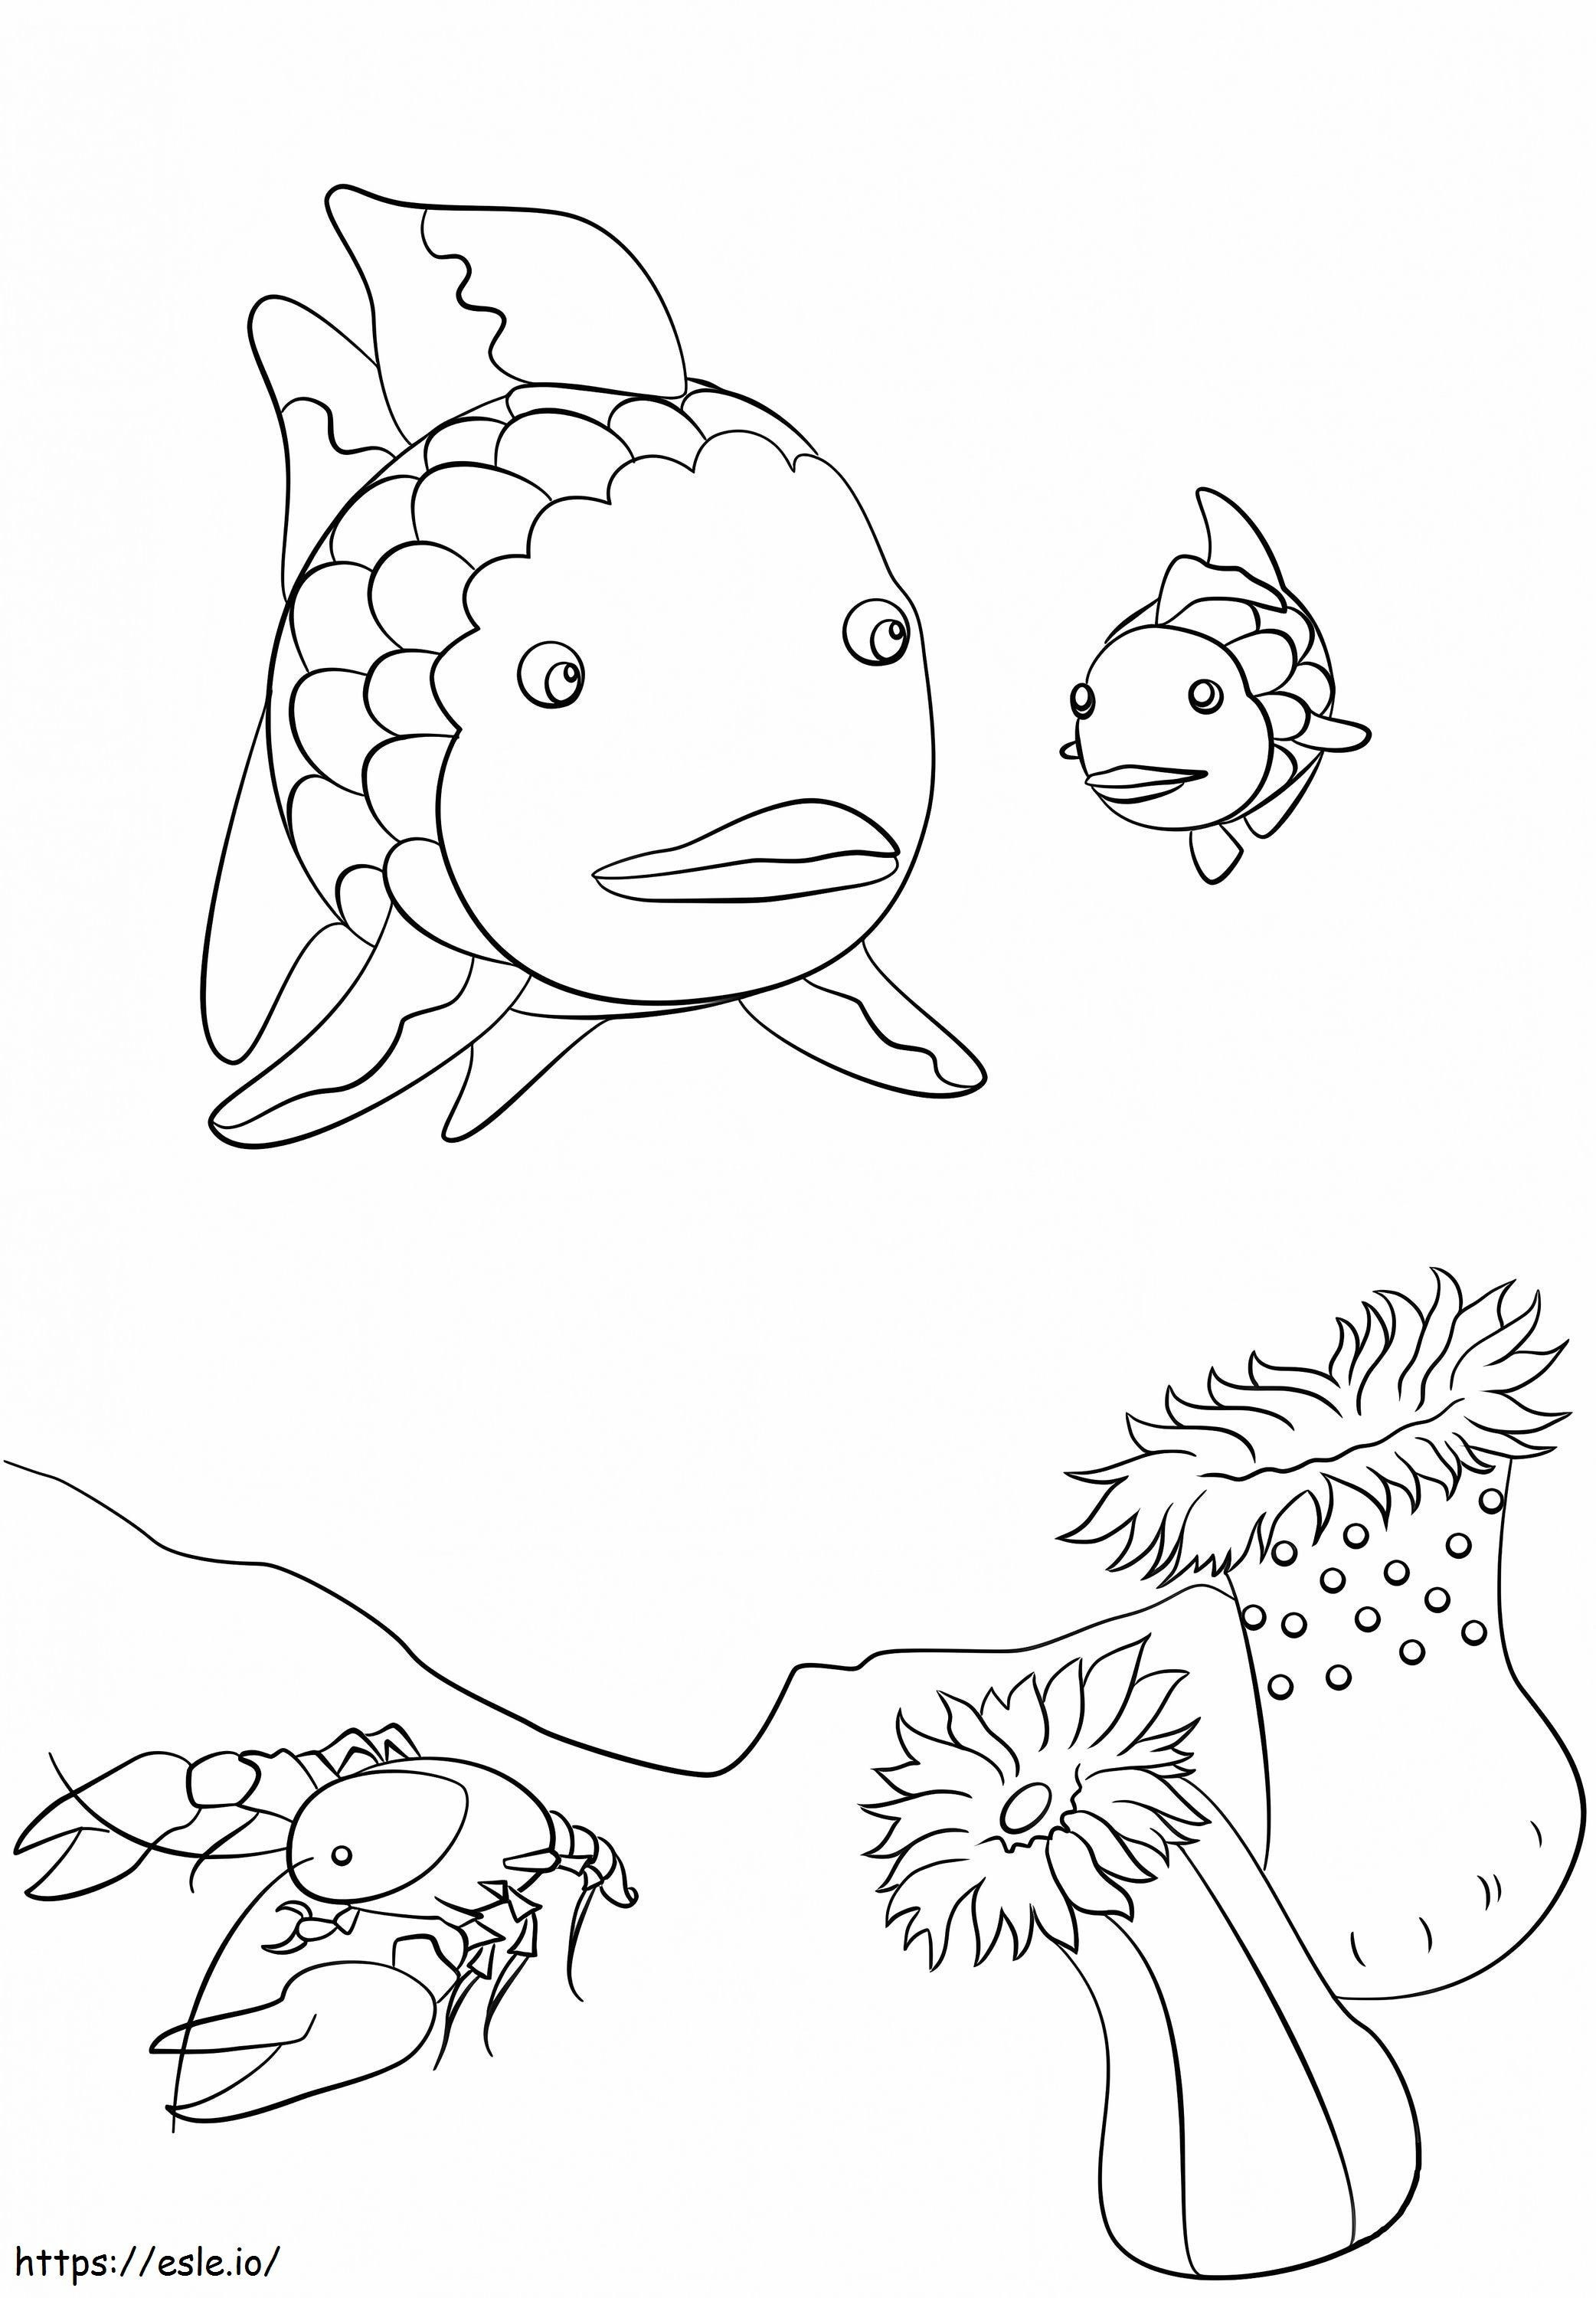 1576832011 Rainbow Fish Crawfish And Small Fish coloring page